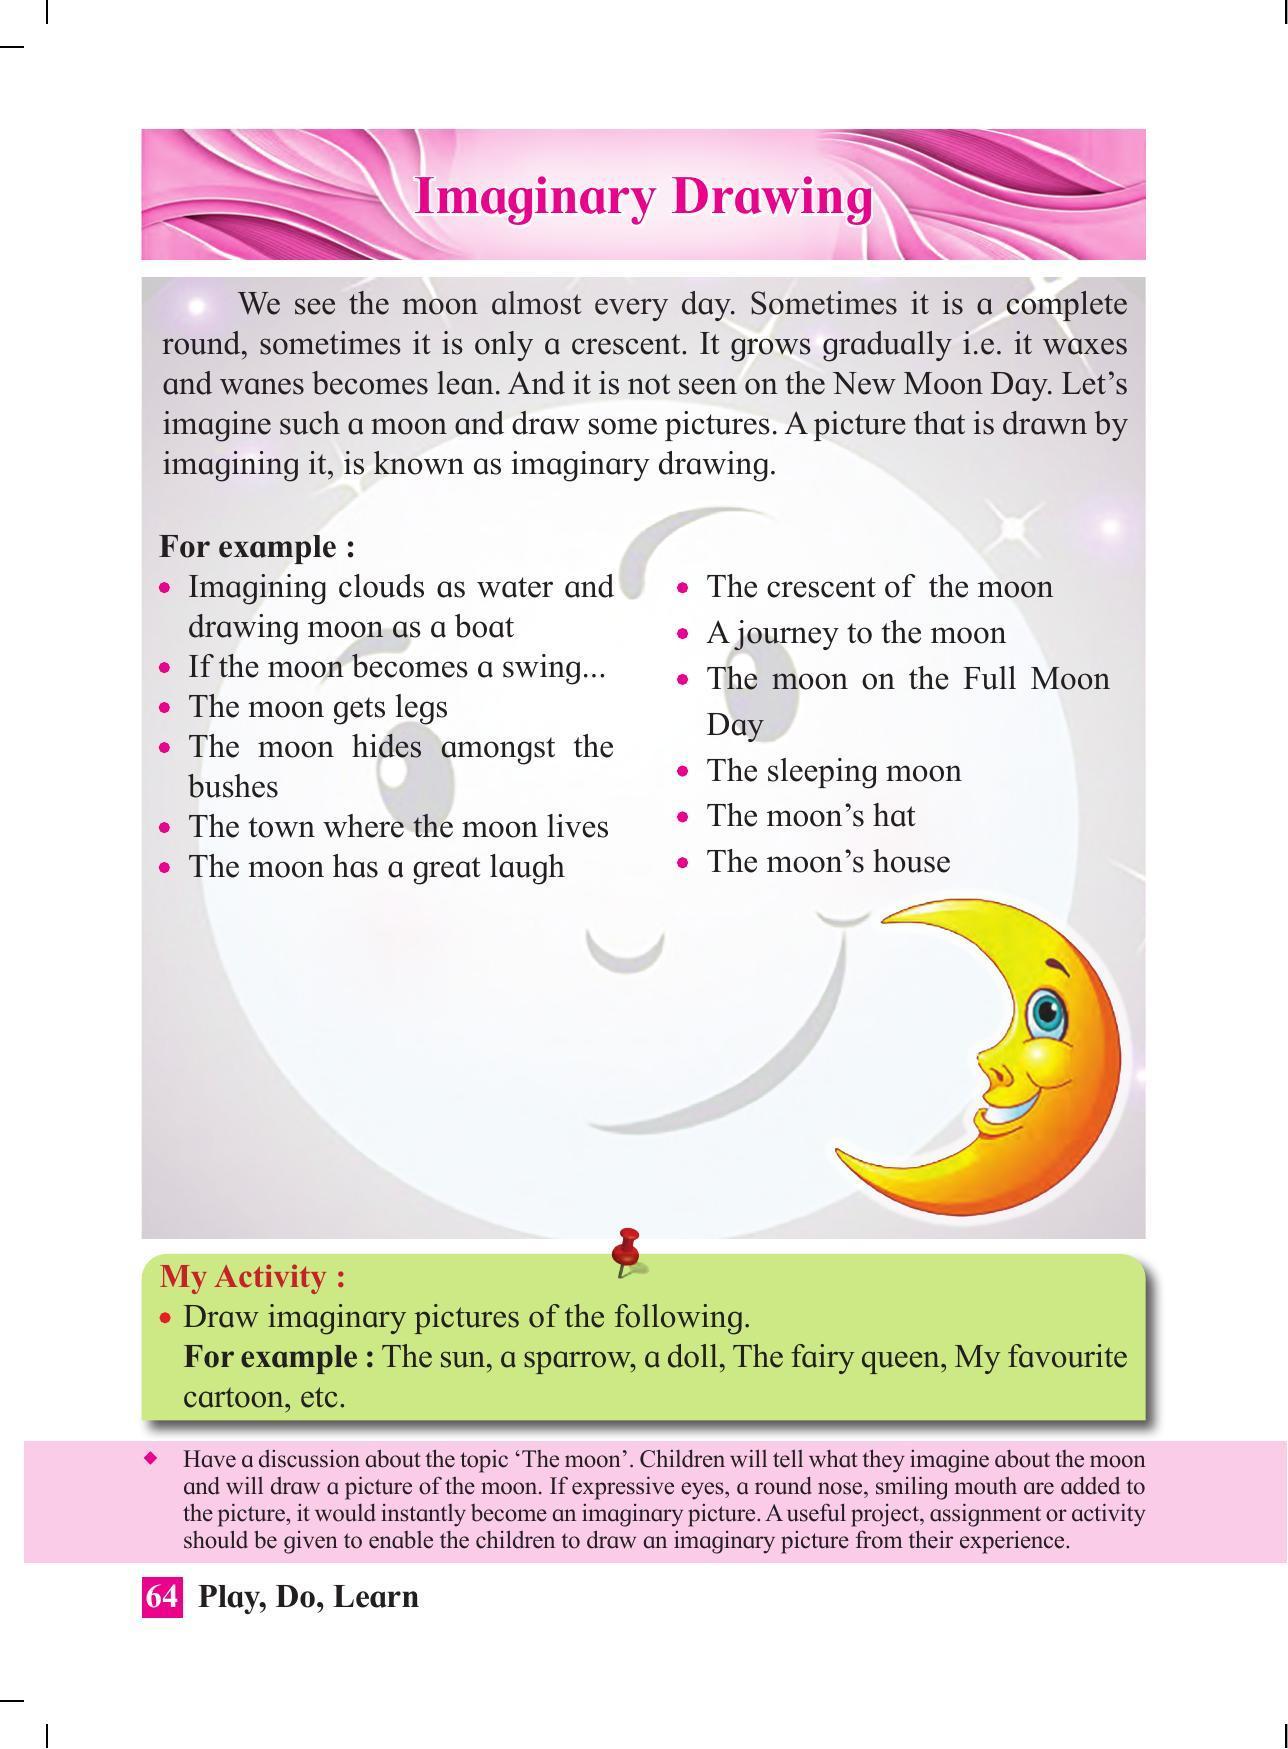 Maharashtra Board Class 4 Play Do Learn (English Medium) Textbook - Page 73